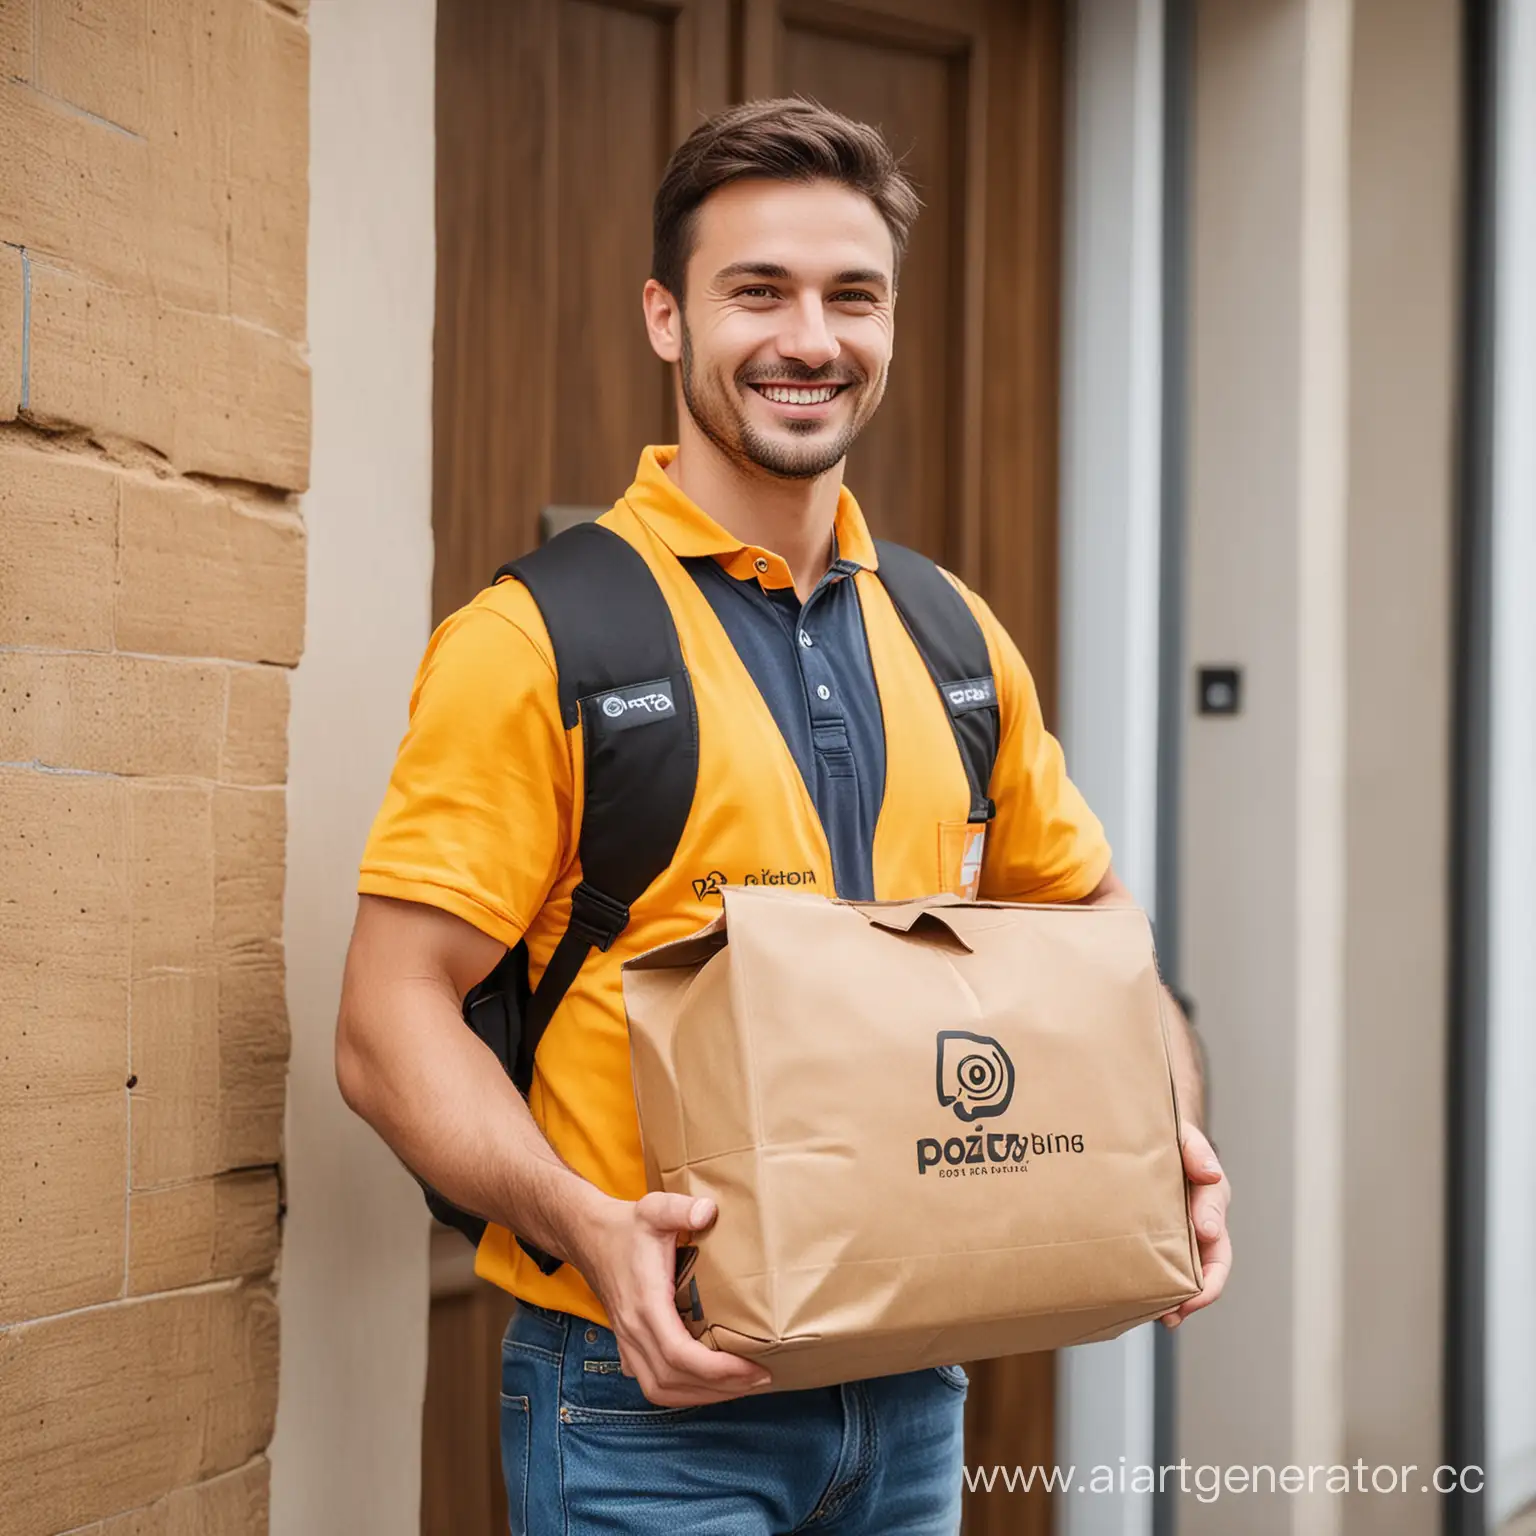 Курьер с яркой сумкой с логотипом Poizon, который улыбается и несет посылку к двери клиента.